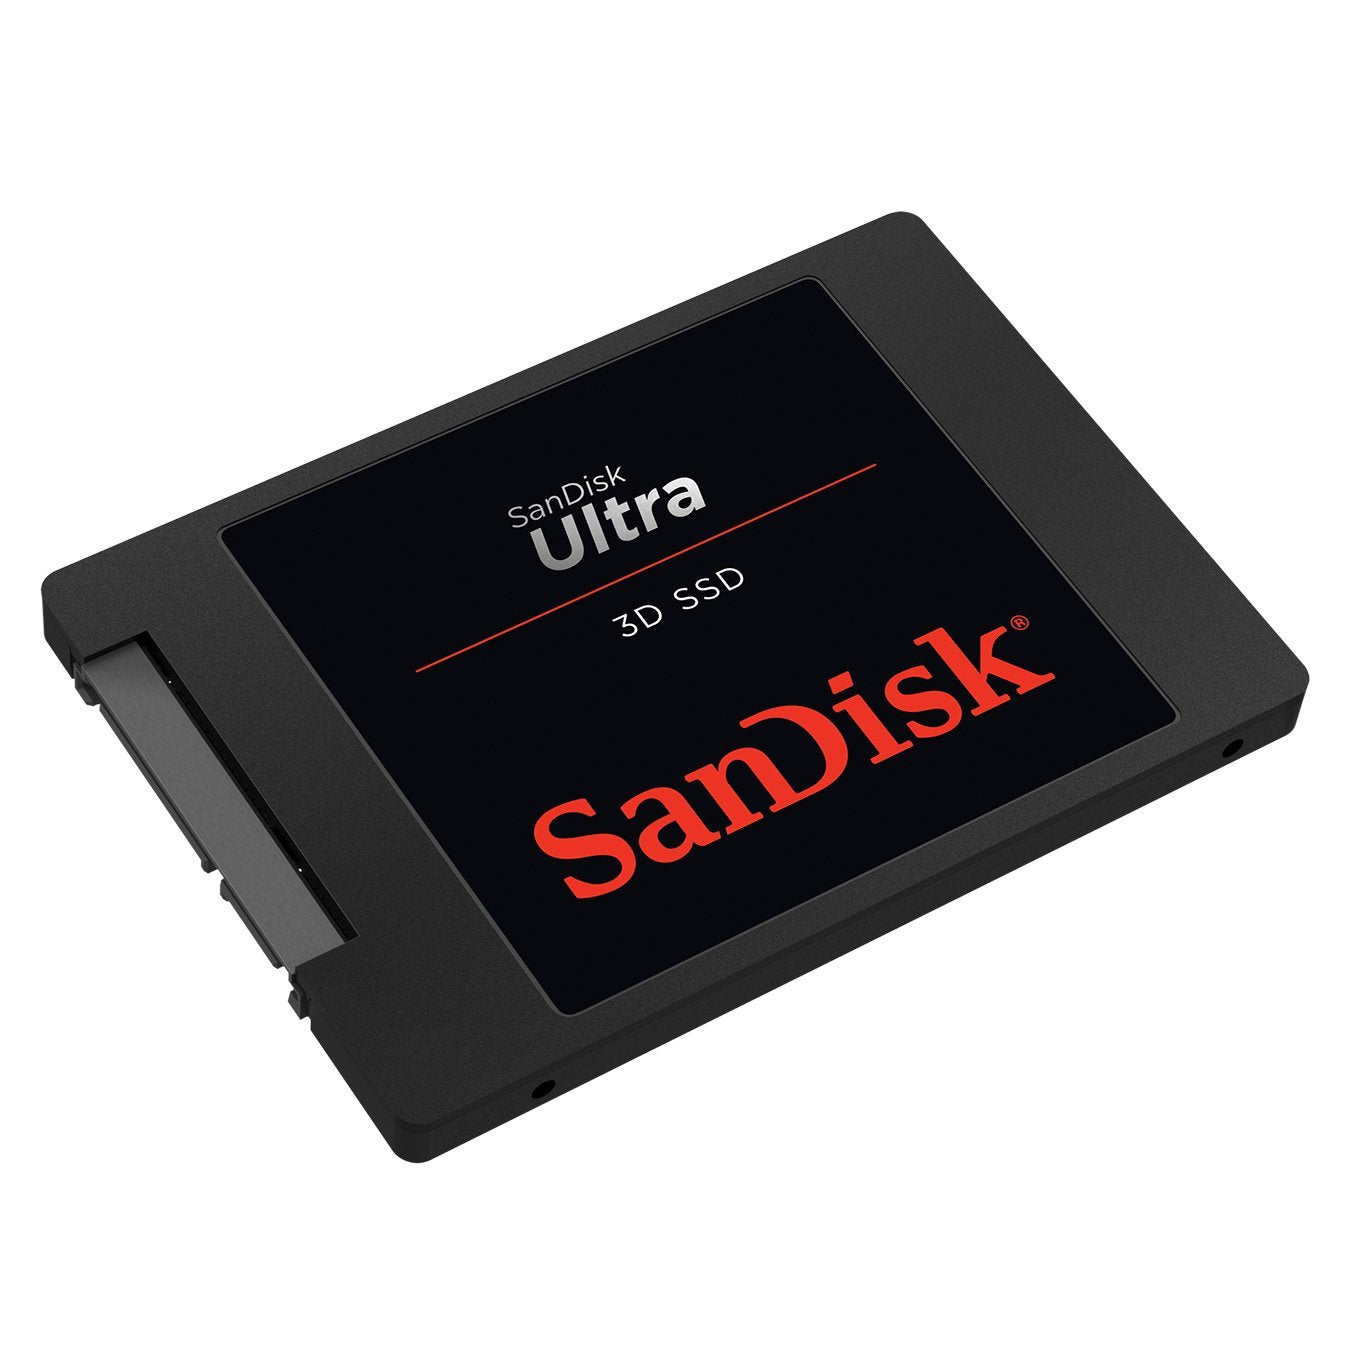 SanDisk Ultra 3D Solid State Drive - SanDisk Singapore Distributor Vector Magnetics Pte Ltd